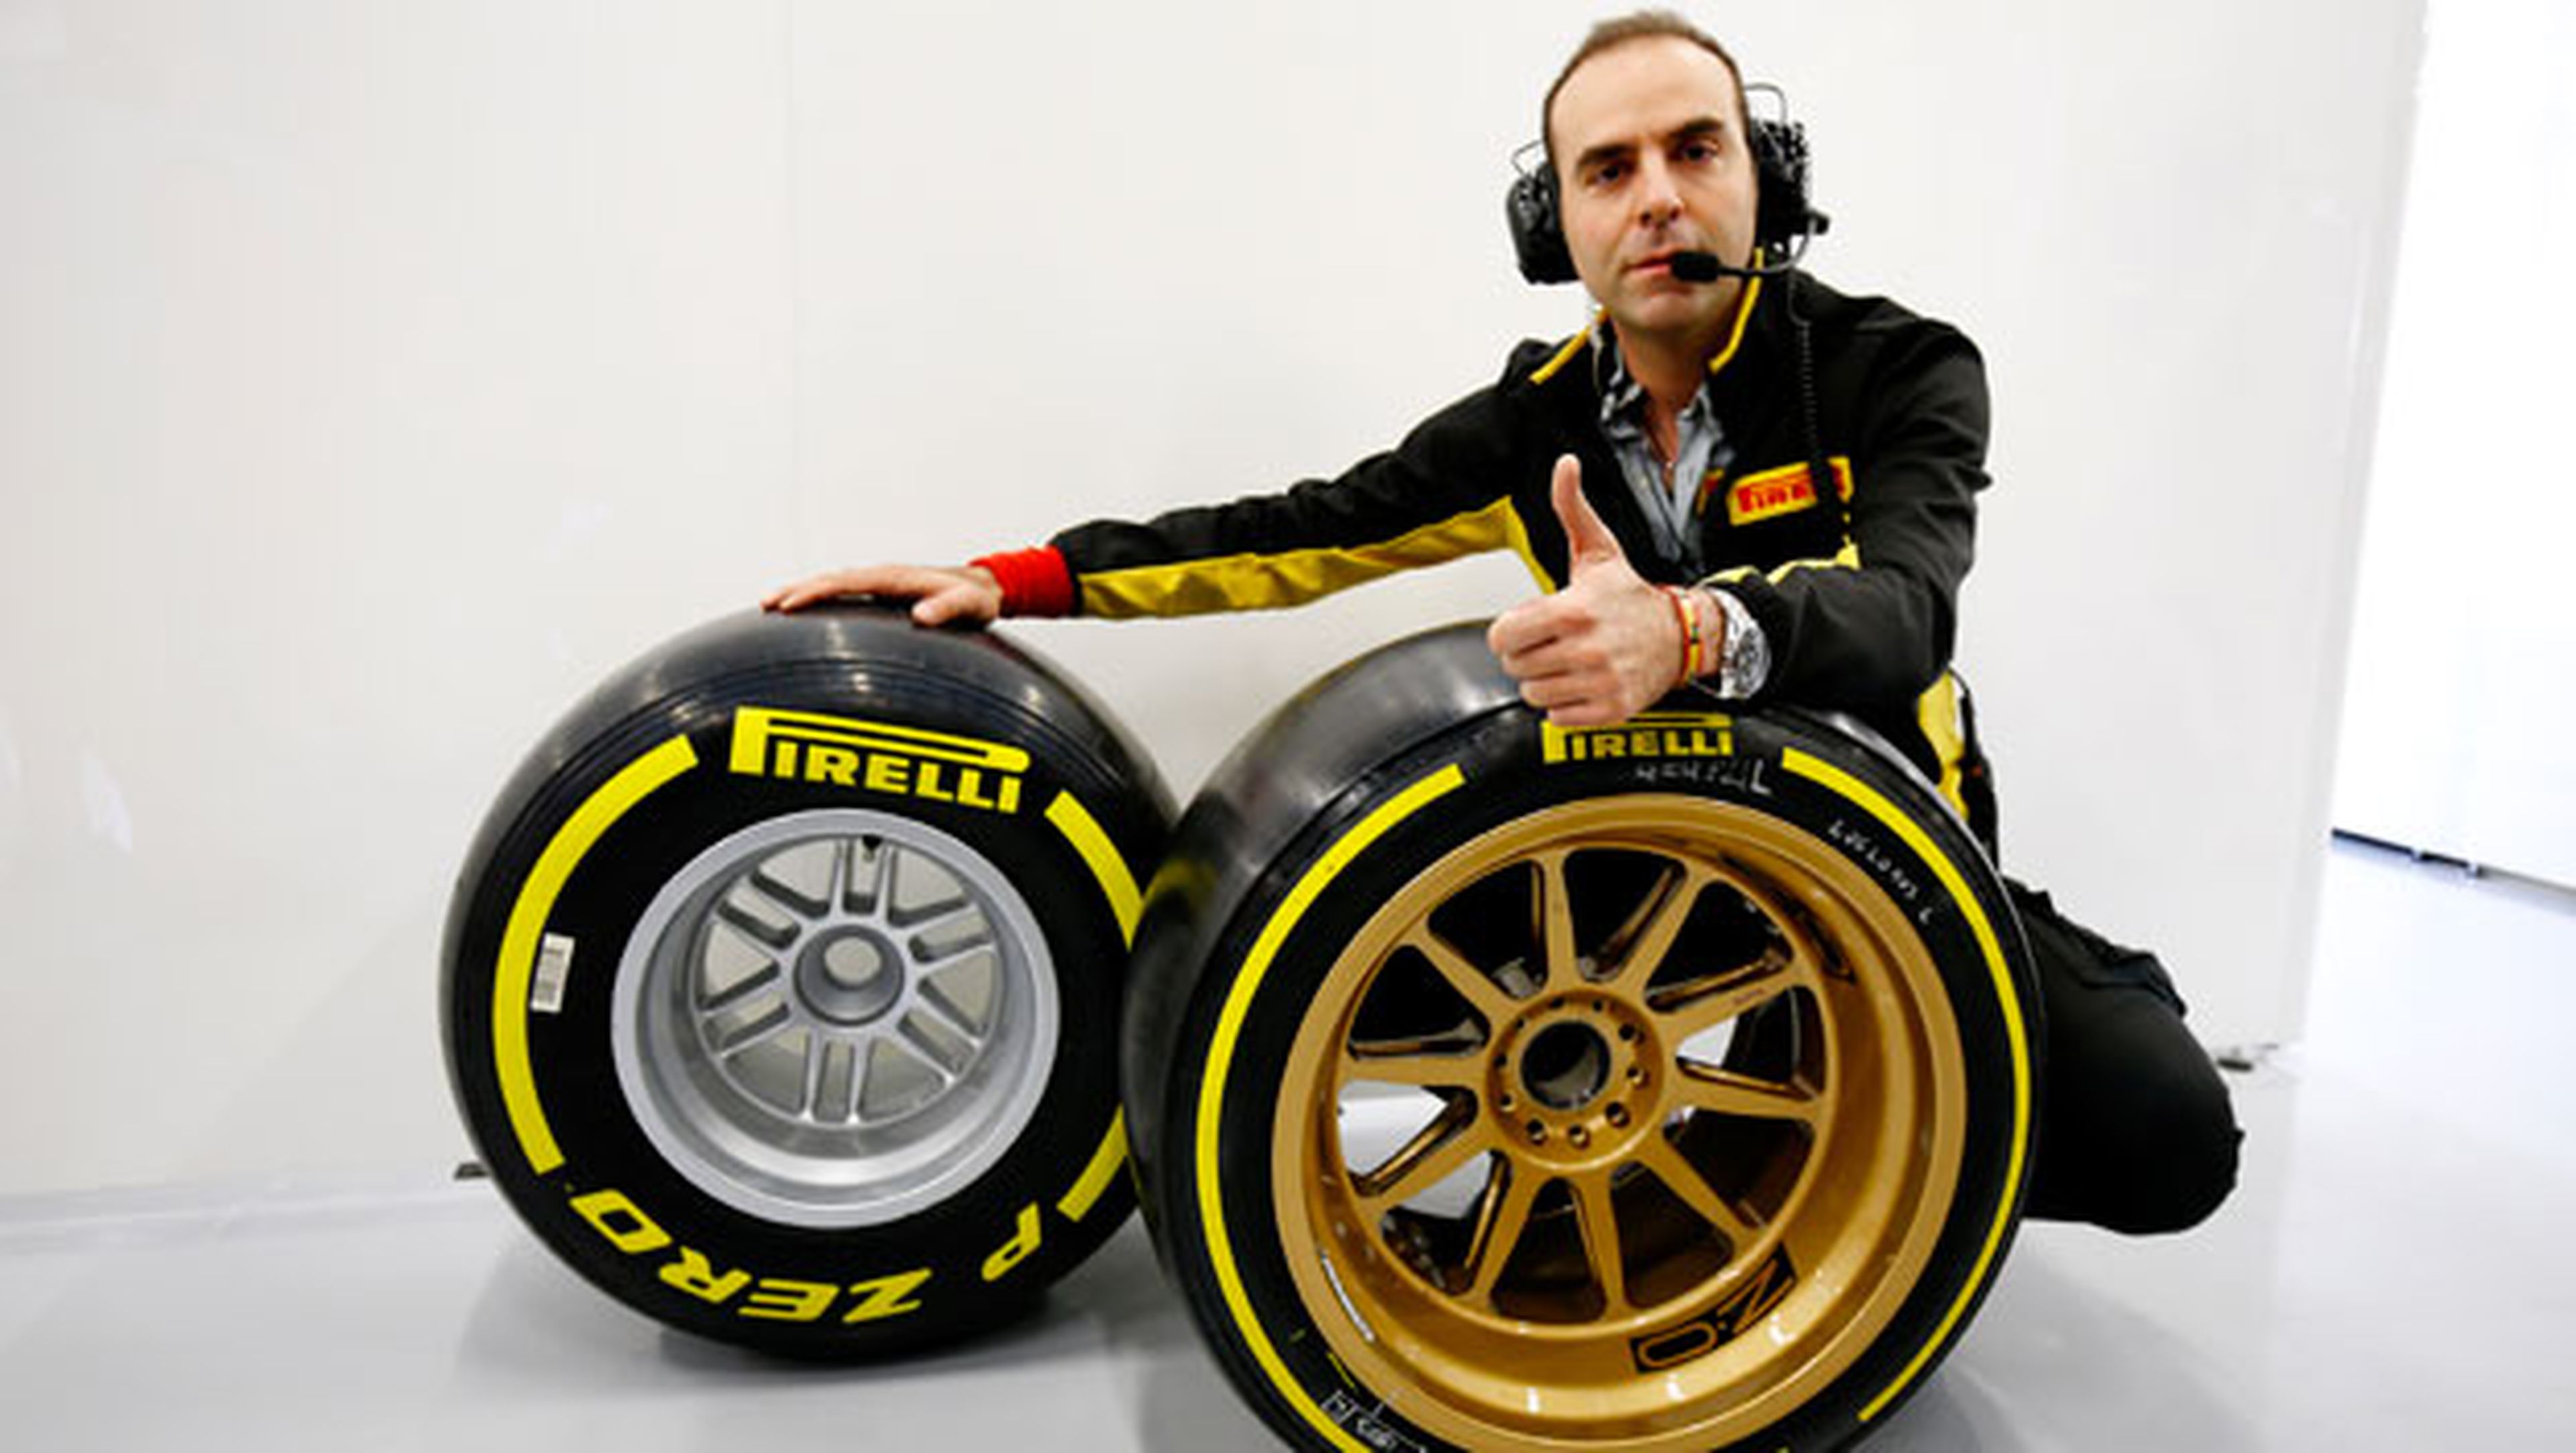 Un ingeniero español clave para Alonso en McLaren